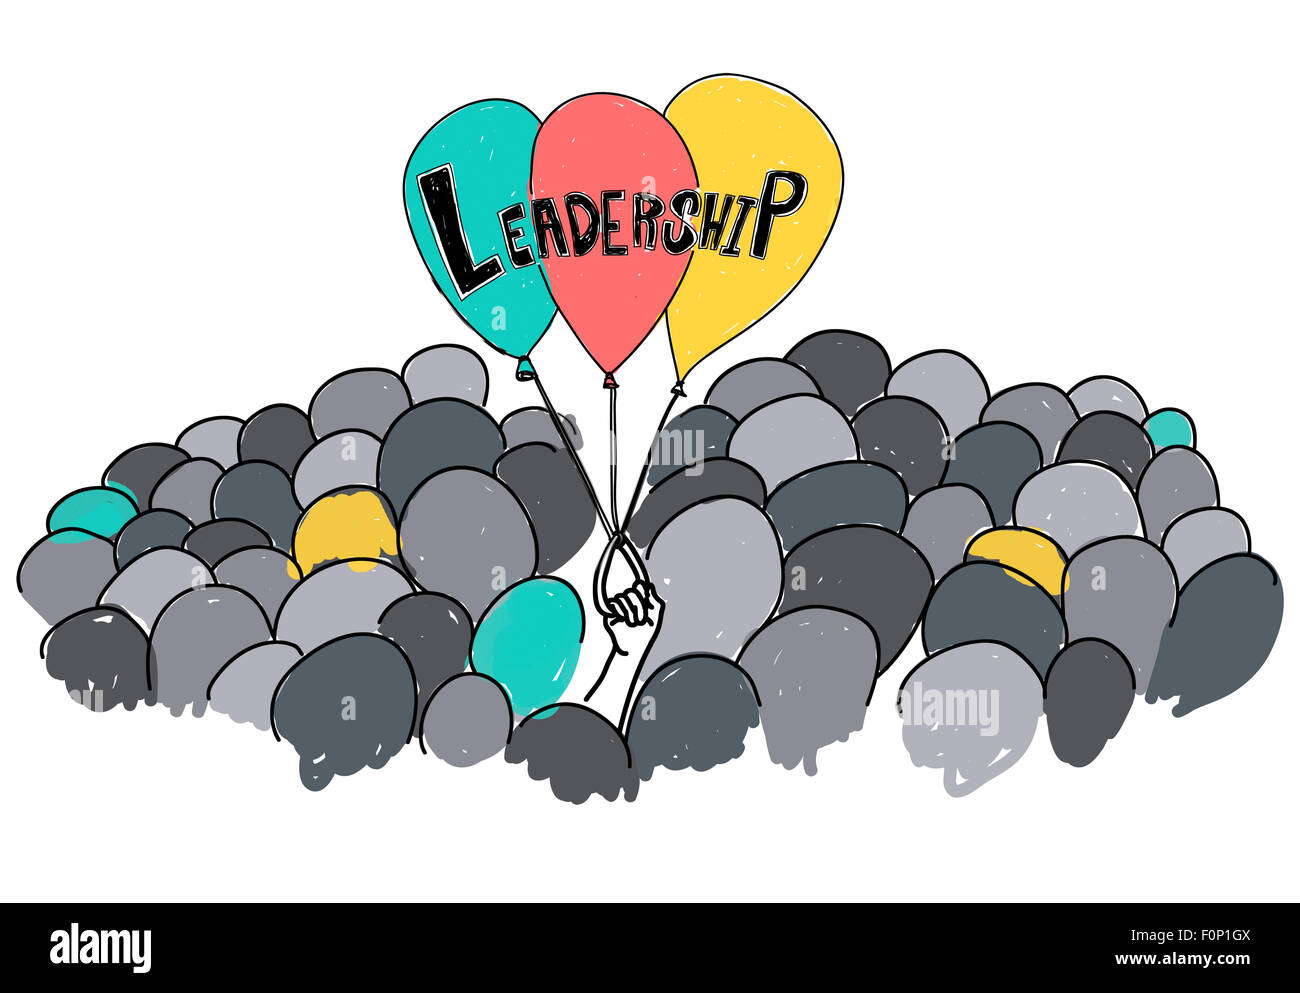 Führung Lead Management Verantwortung Vision Concept Stockfoto